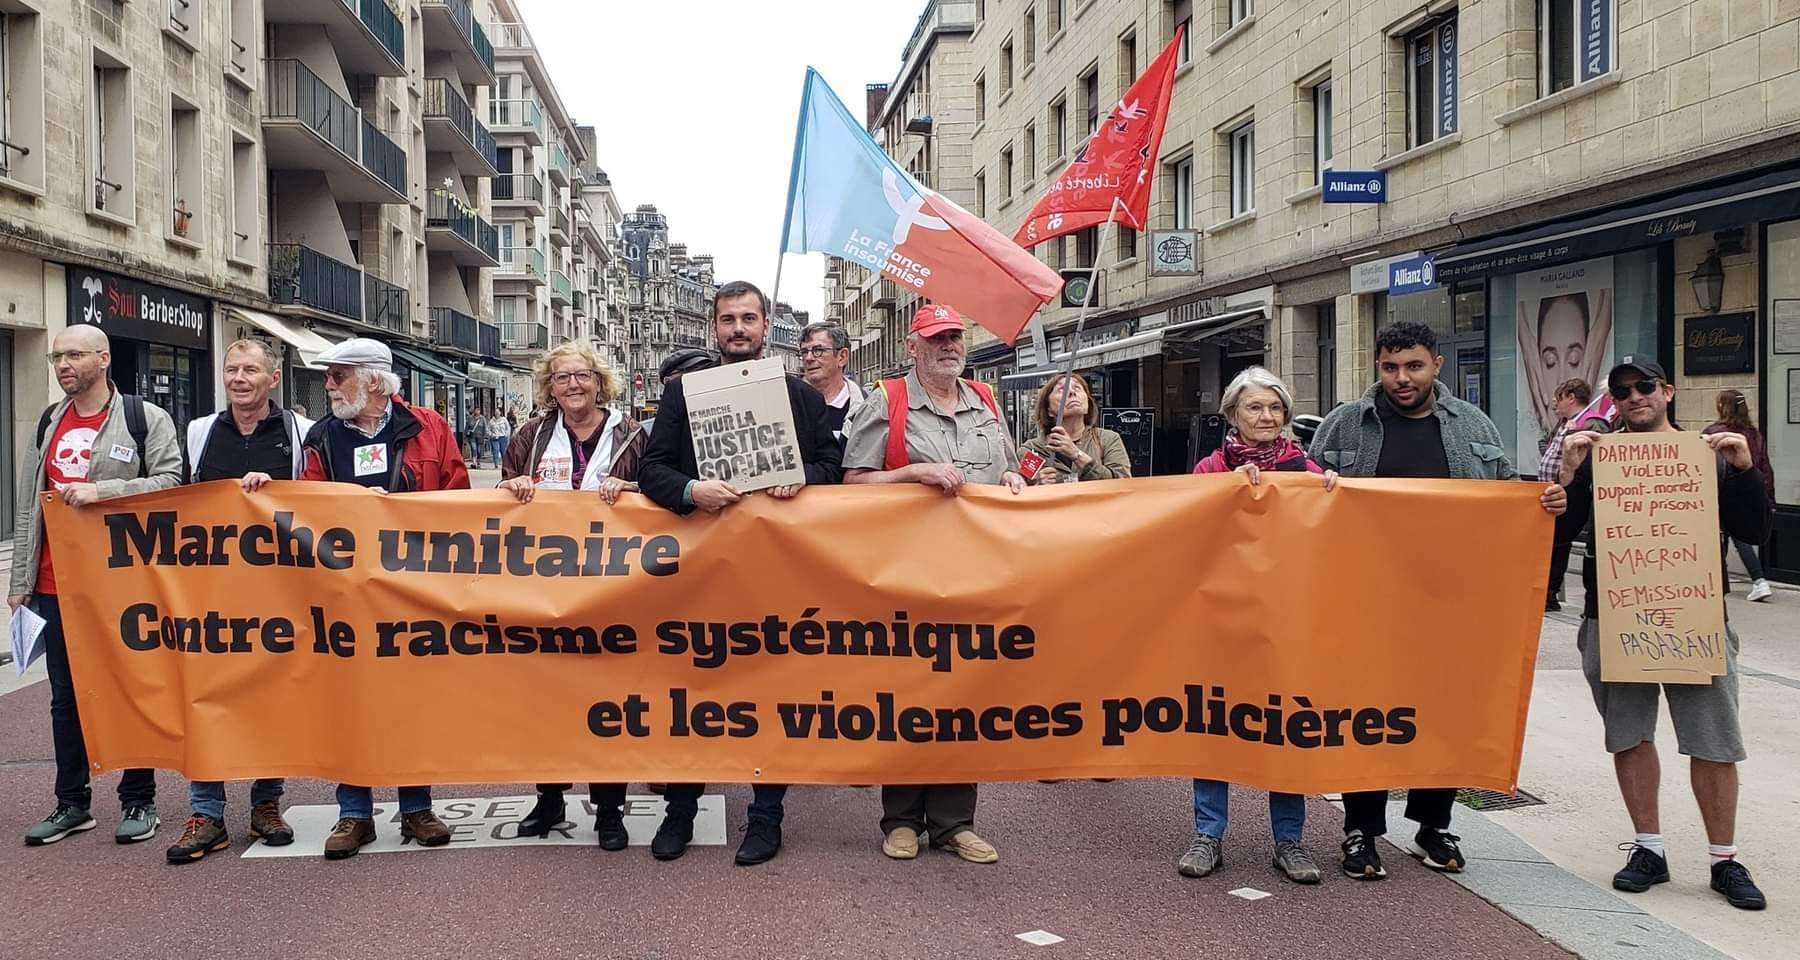 VIDEO – Manifestation à Rouen le 23/09/23 contre le racisme systémique et les violences policières